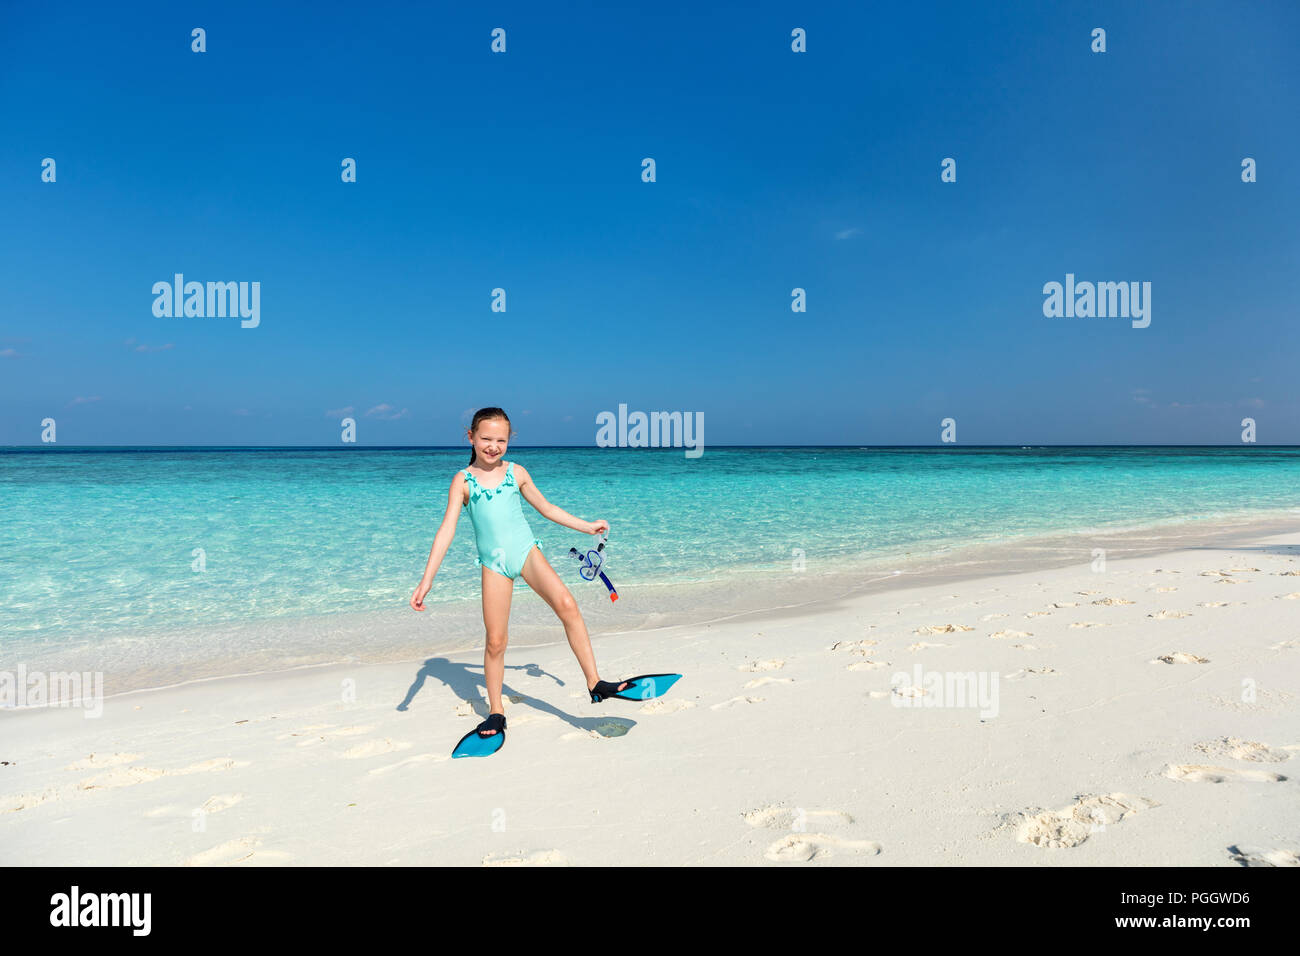 Adorable niña con equipo de buceo en la playa durante las vacaciones de verano Foto de stock